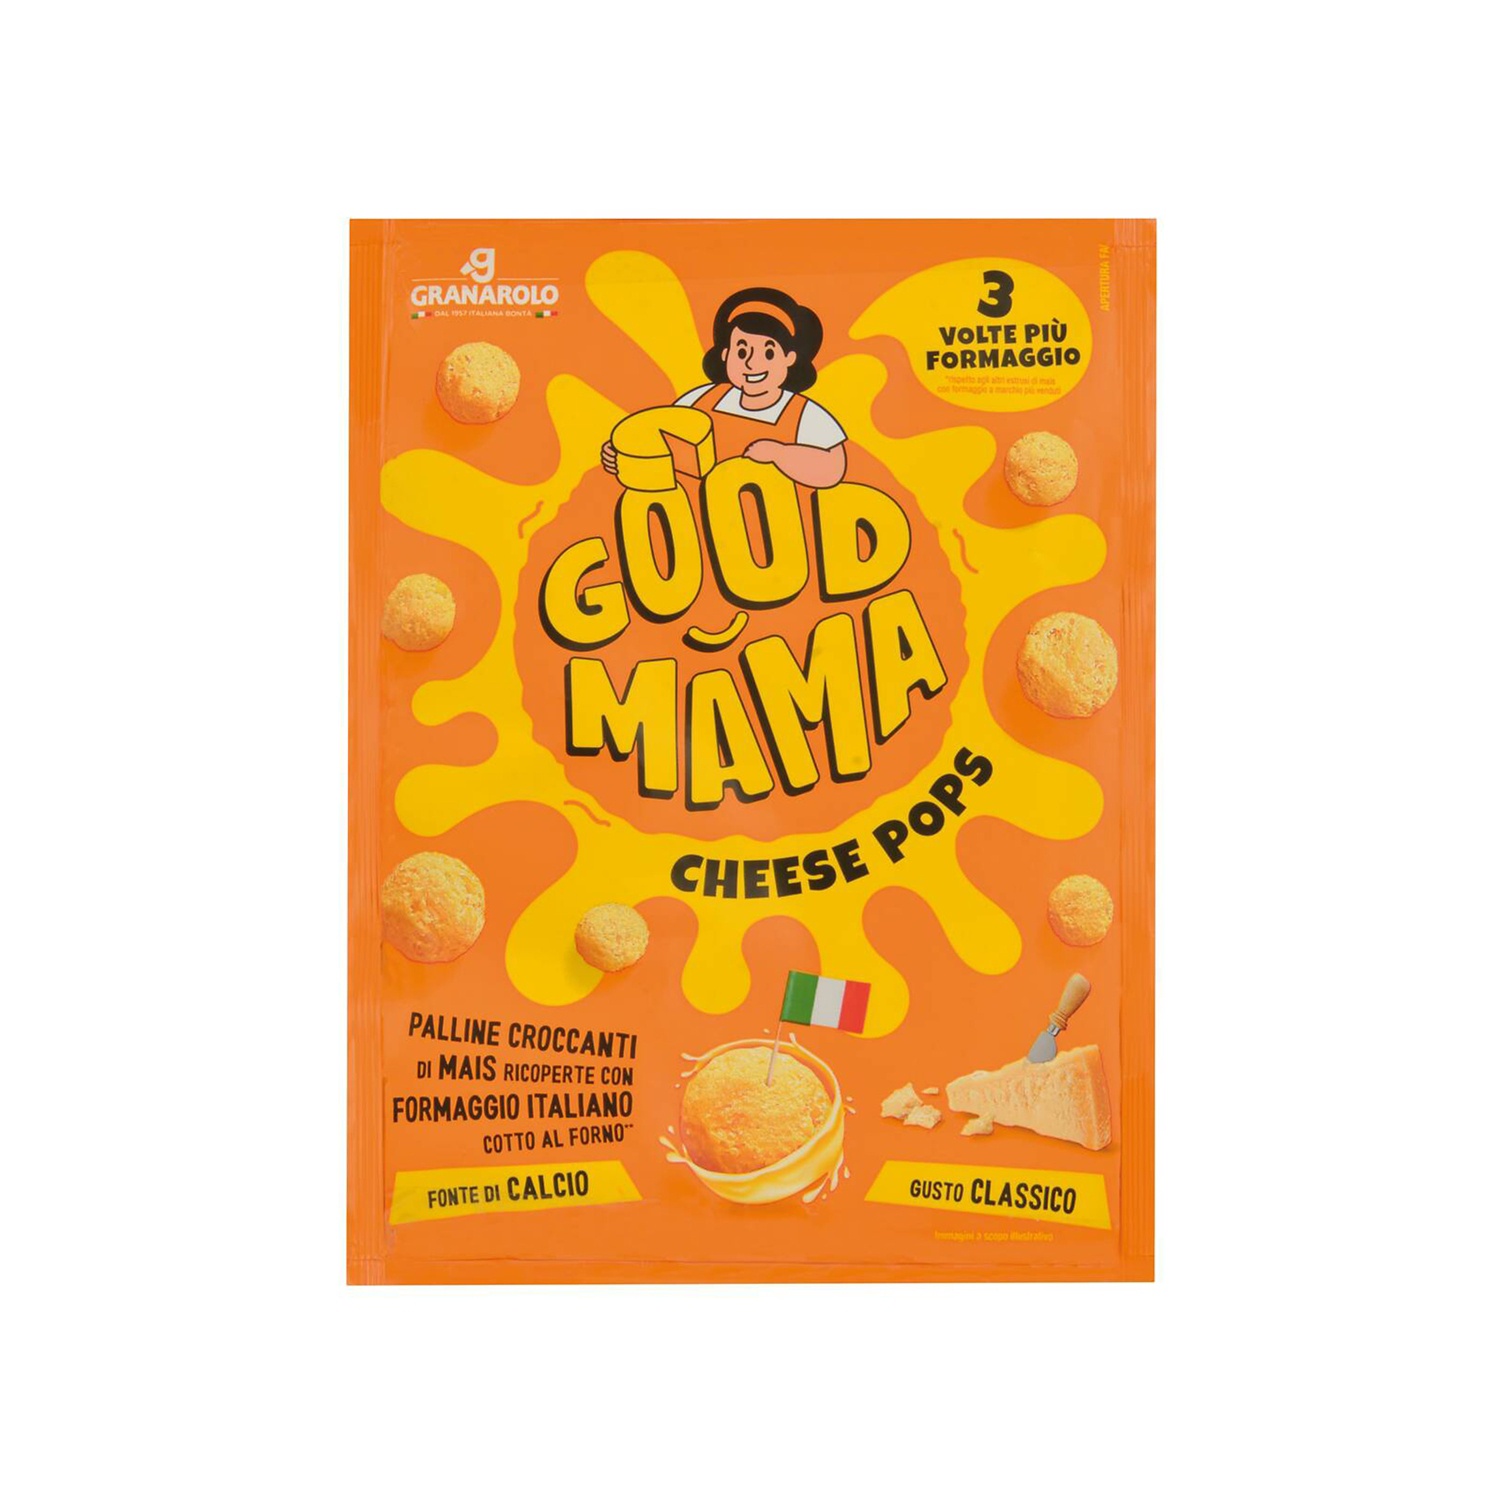 GRANAROLO Good mama cheese pops